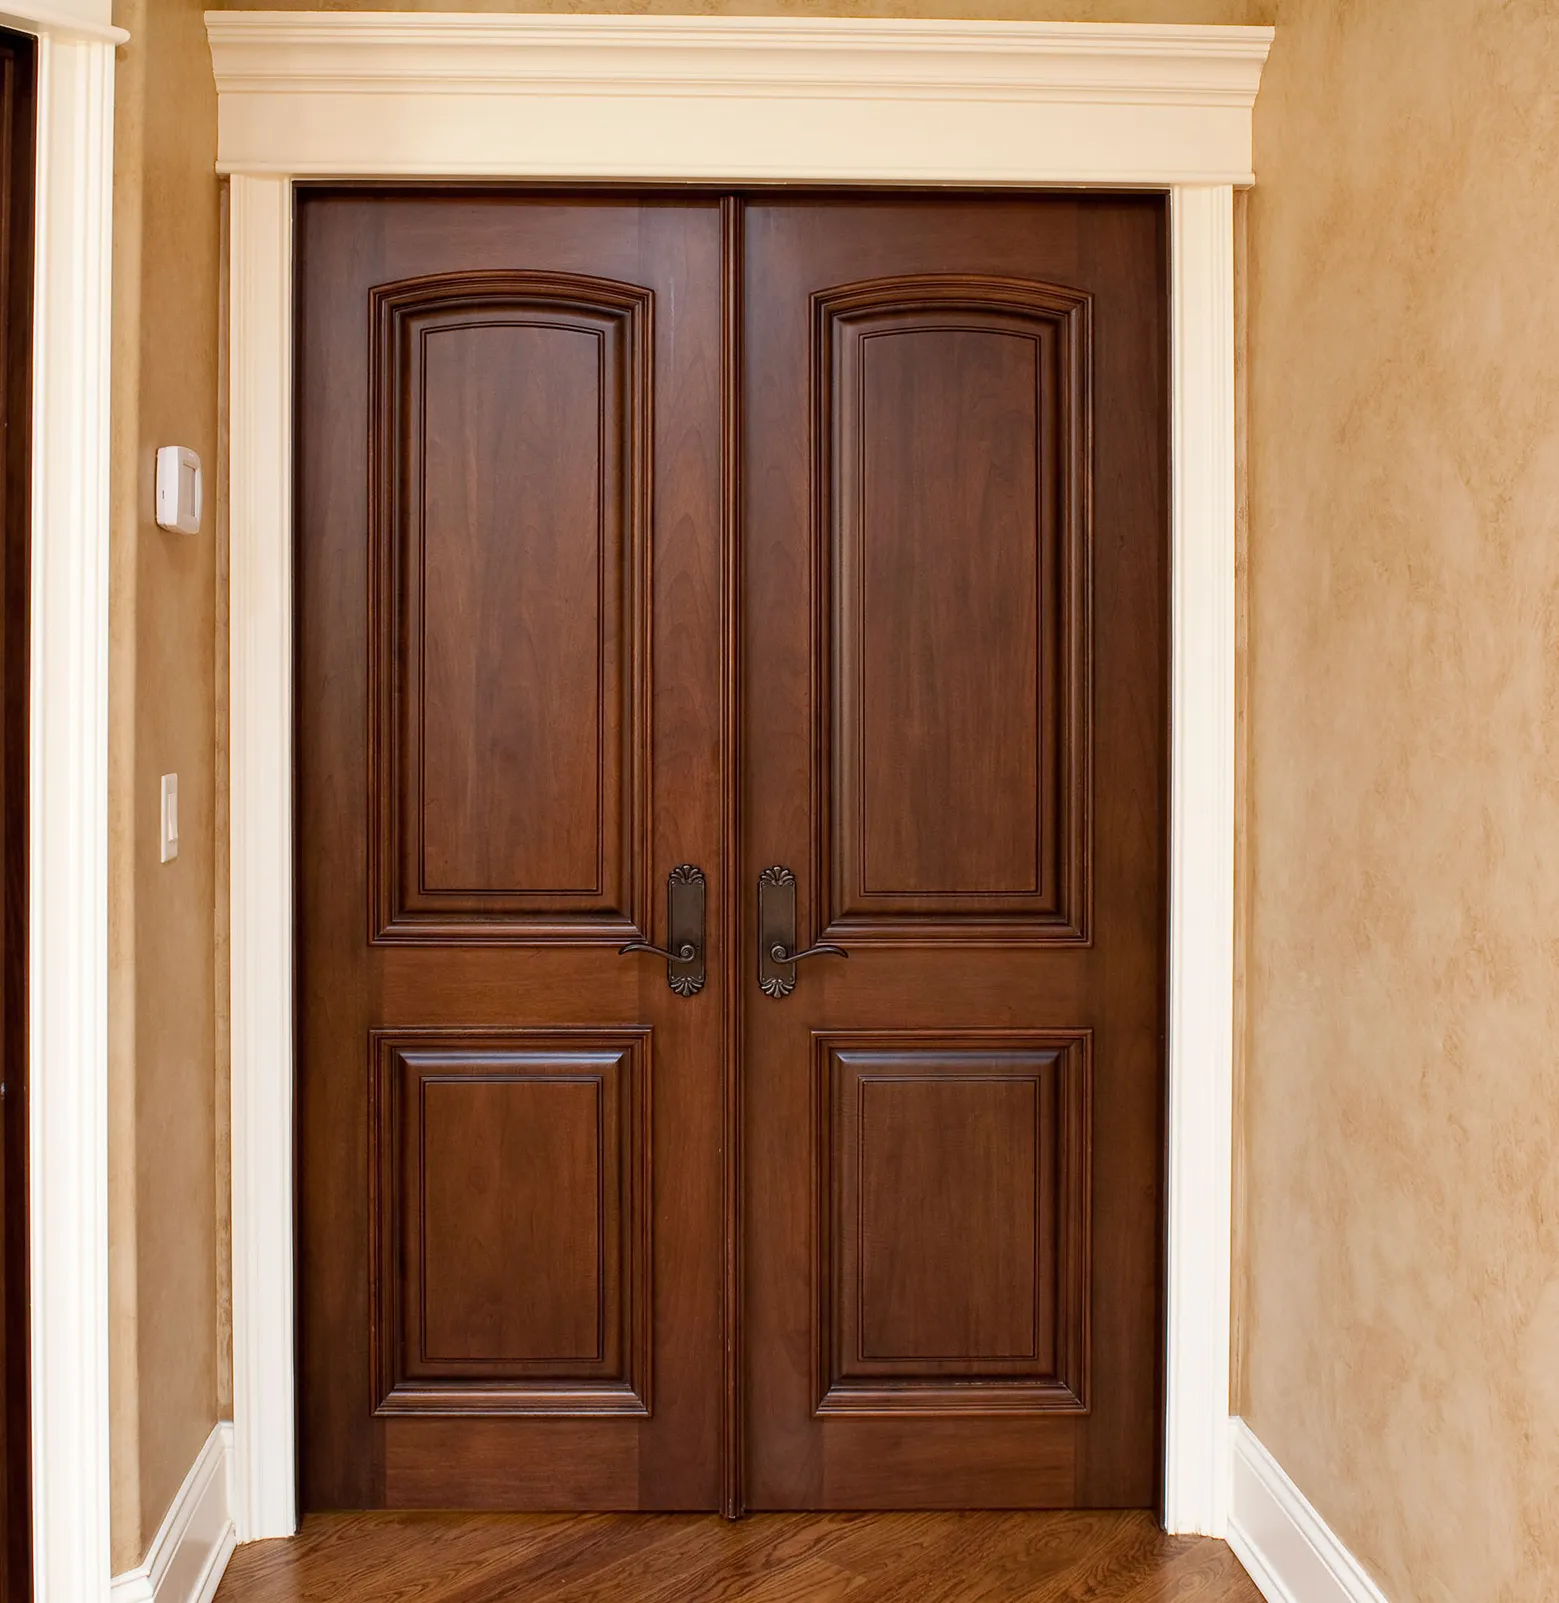 Роскошный интерьер, классический дизайн, винированная дверь из тикового дерева с 4 панелями и приподнятыми молдингами